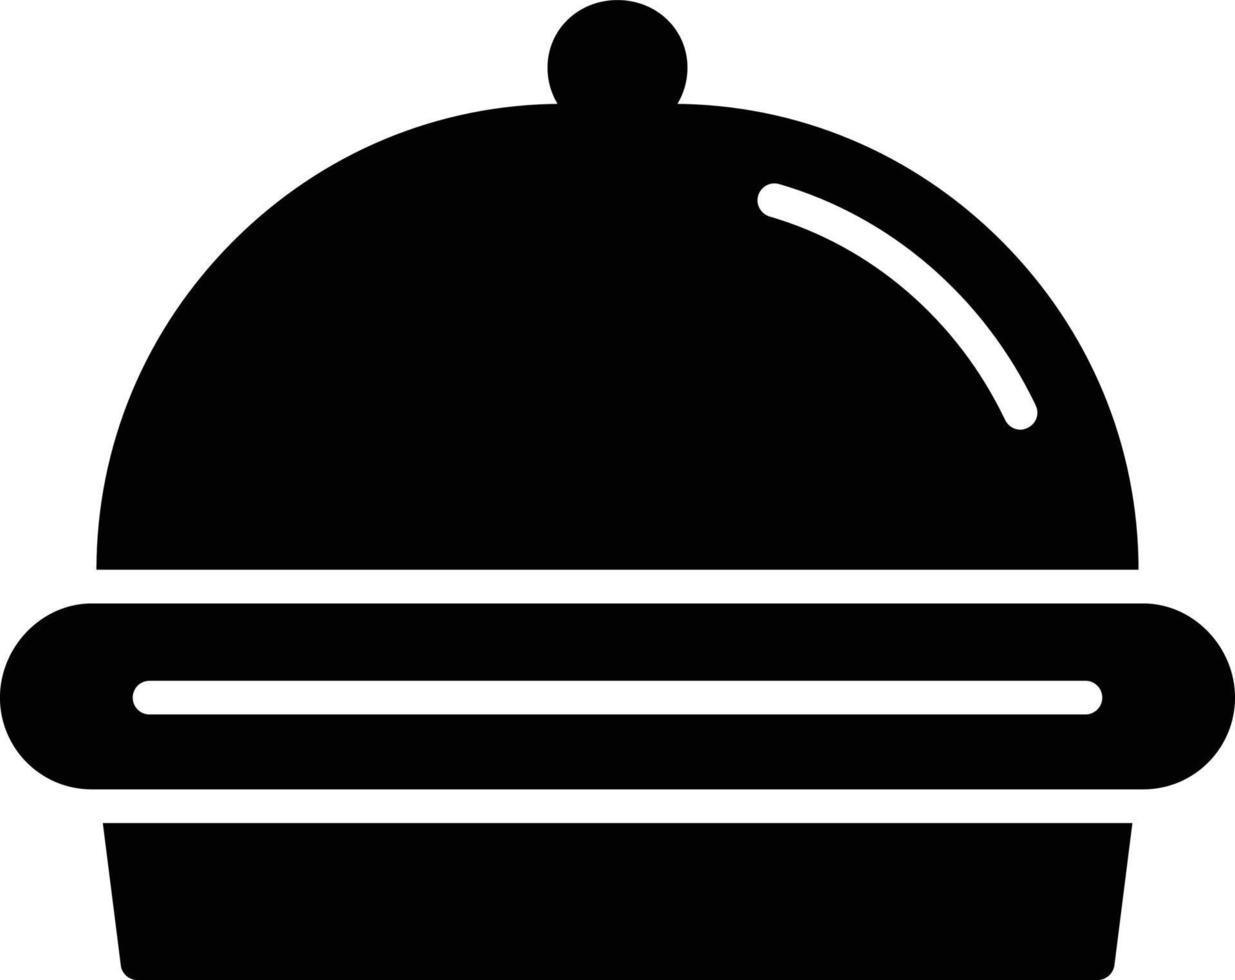 Food Tray Glyph Icon vector